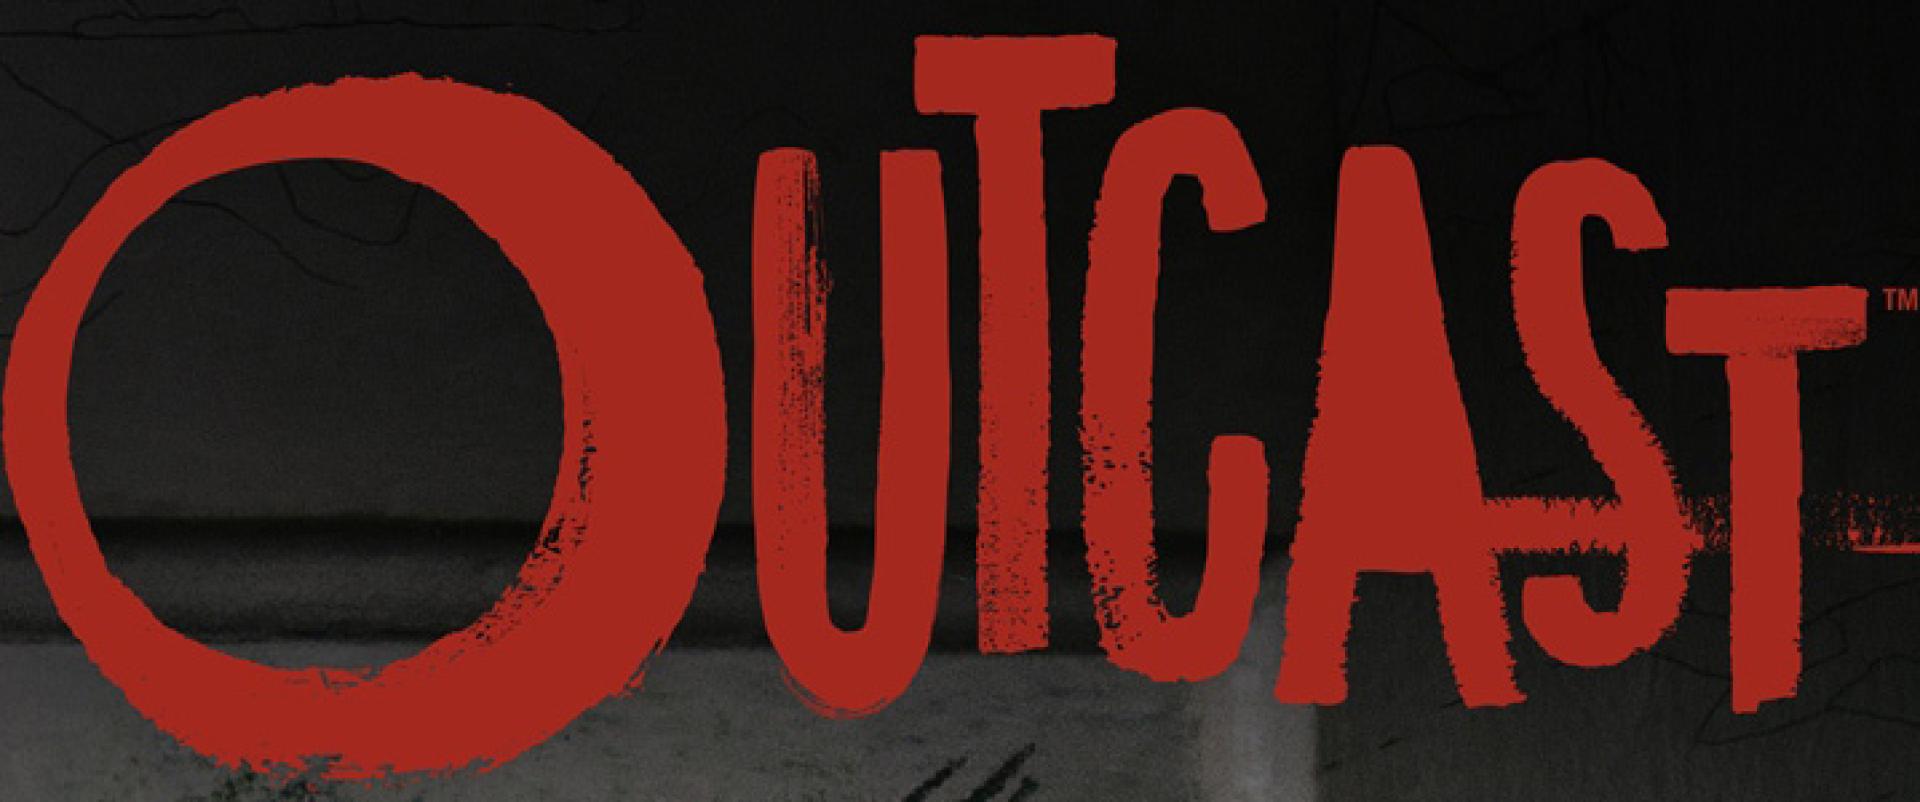 Outcast 1x01